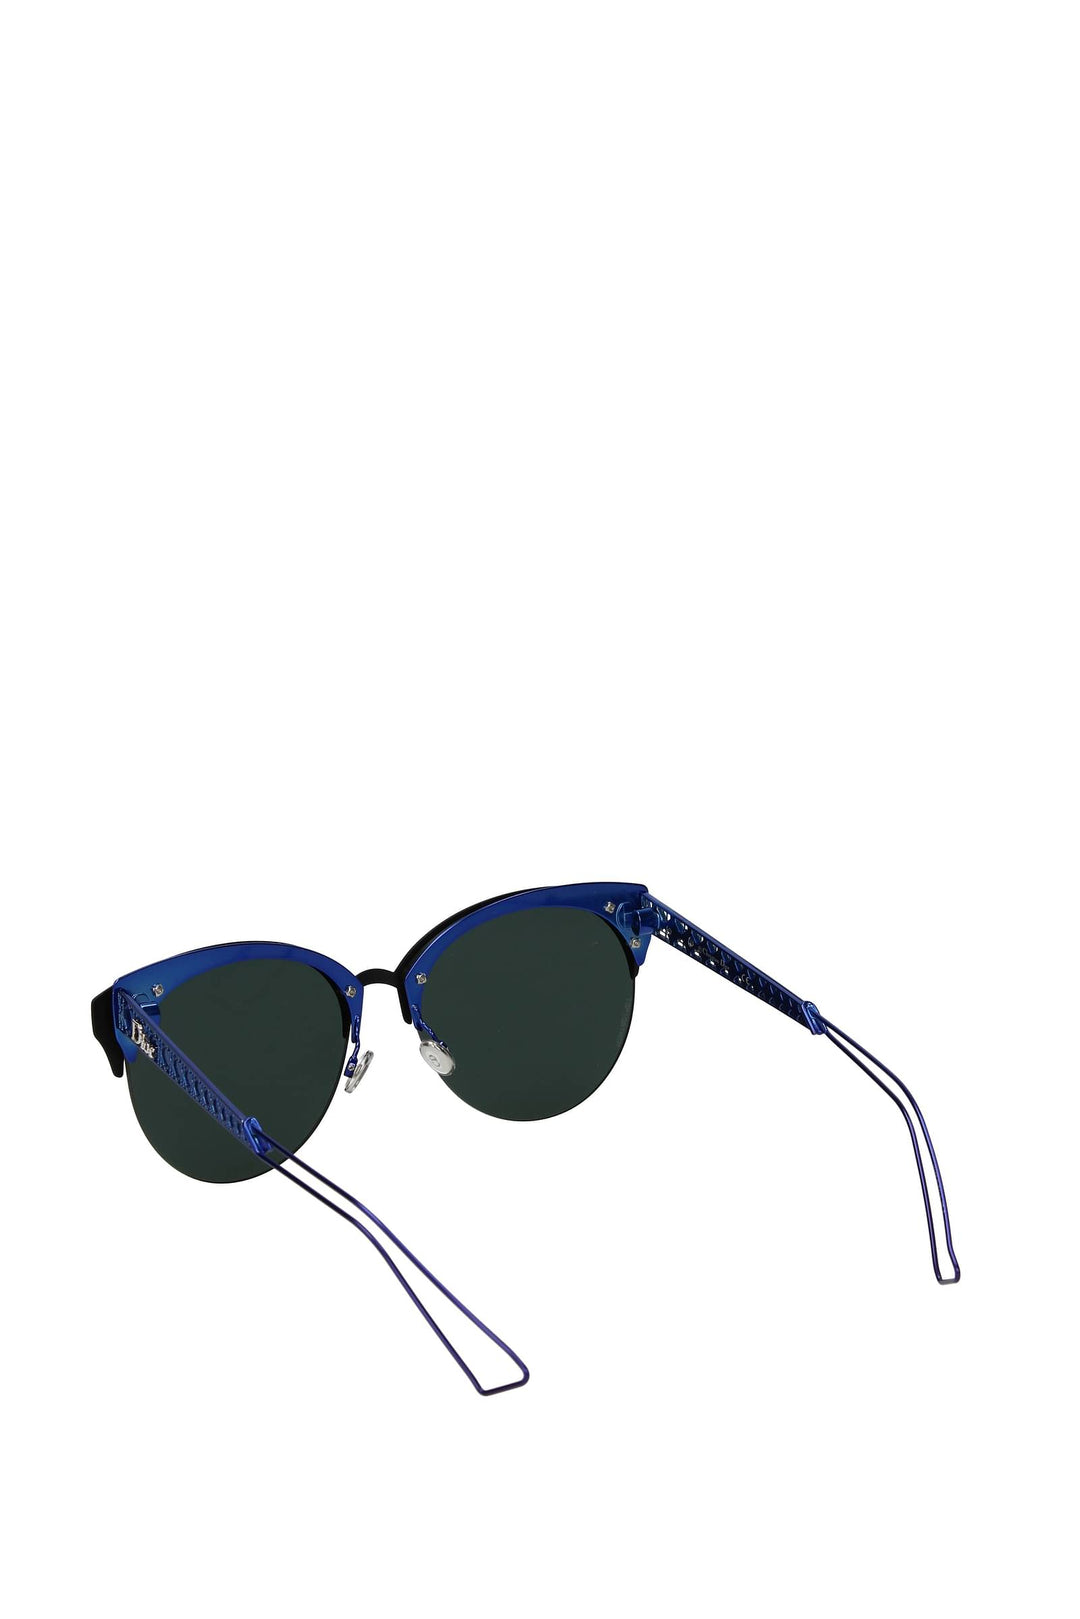 Occhiali Da Sole Acetato Blu Nero - Christian Dior - Donna